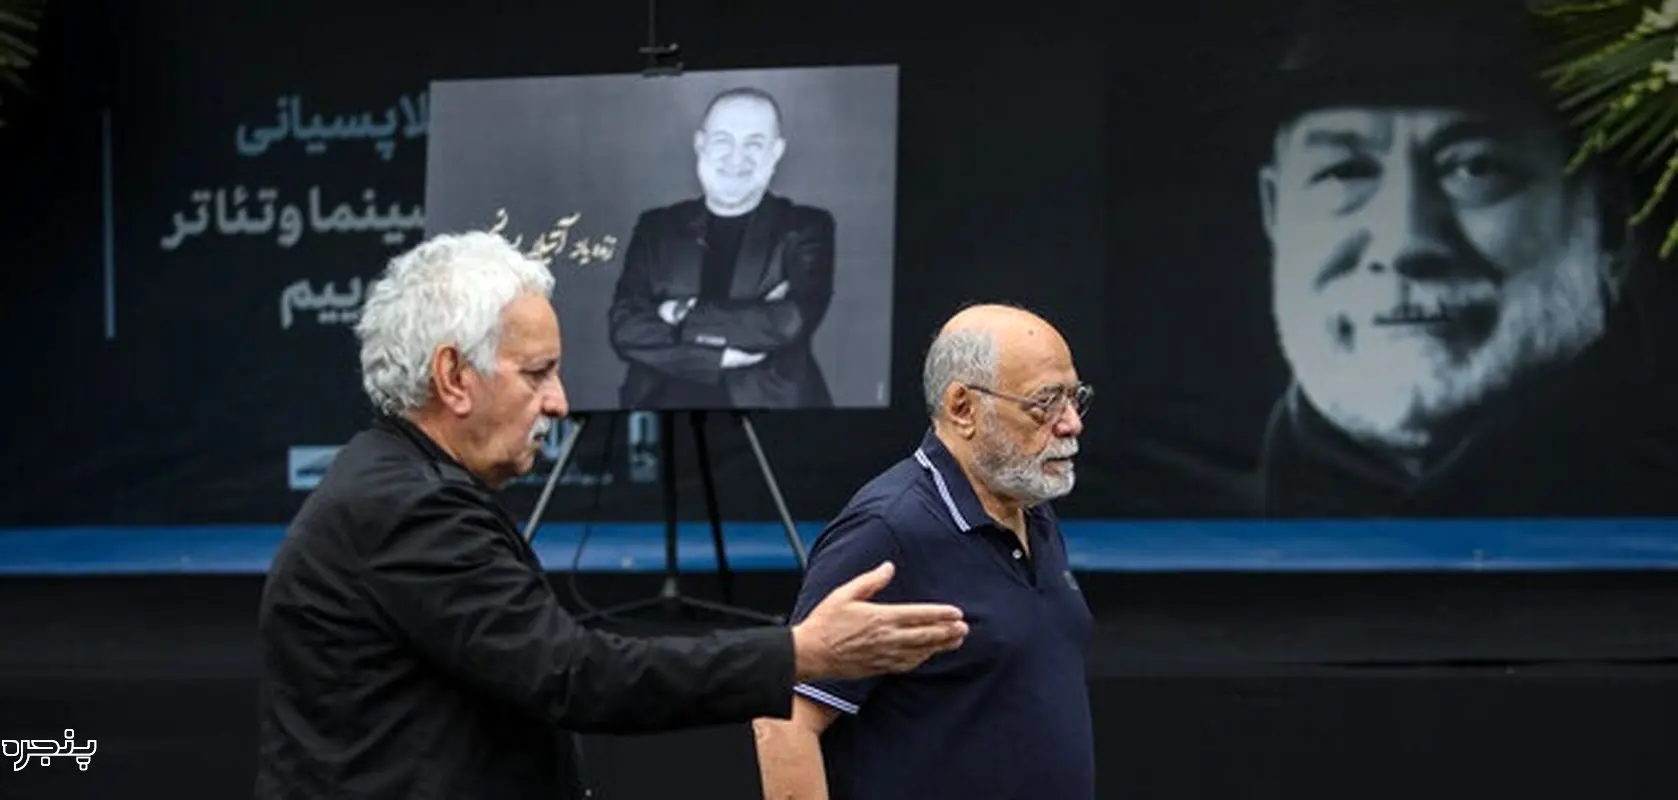 تصاویری از حضور هنرمندان در مراسم تشییع پیکر آتیلا پسیانی